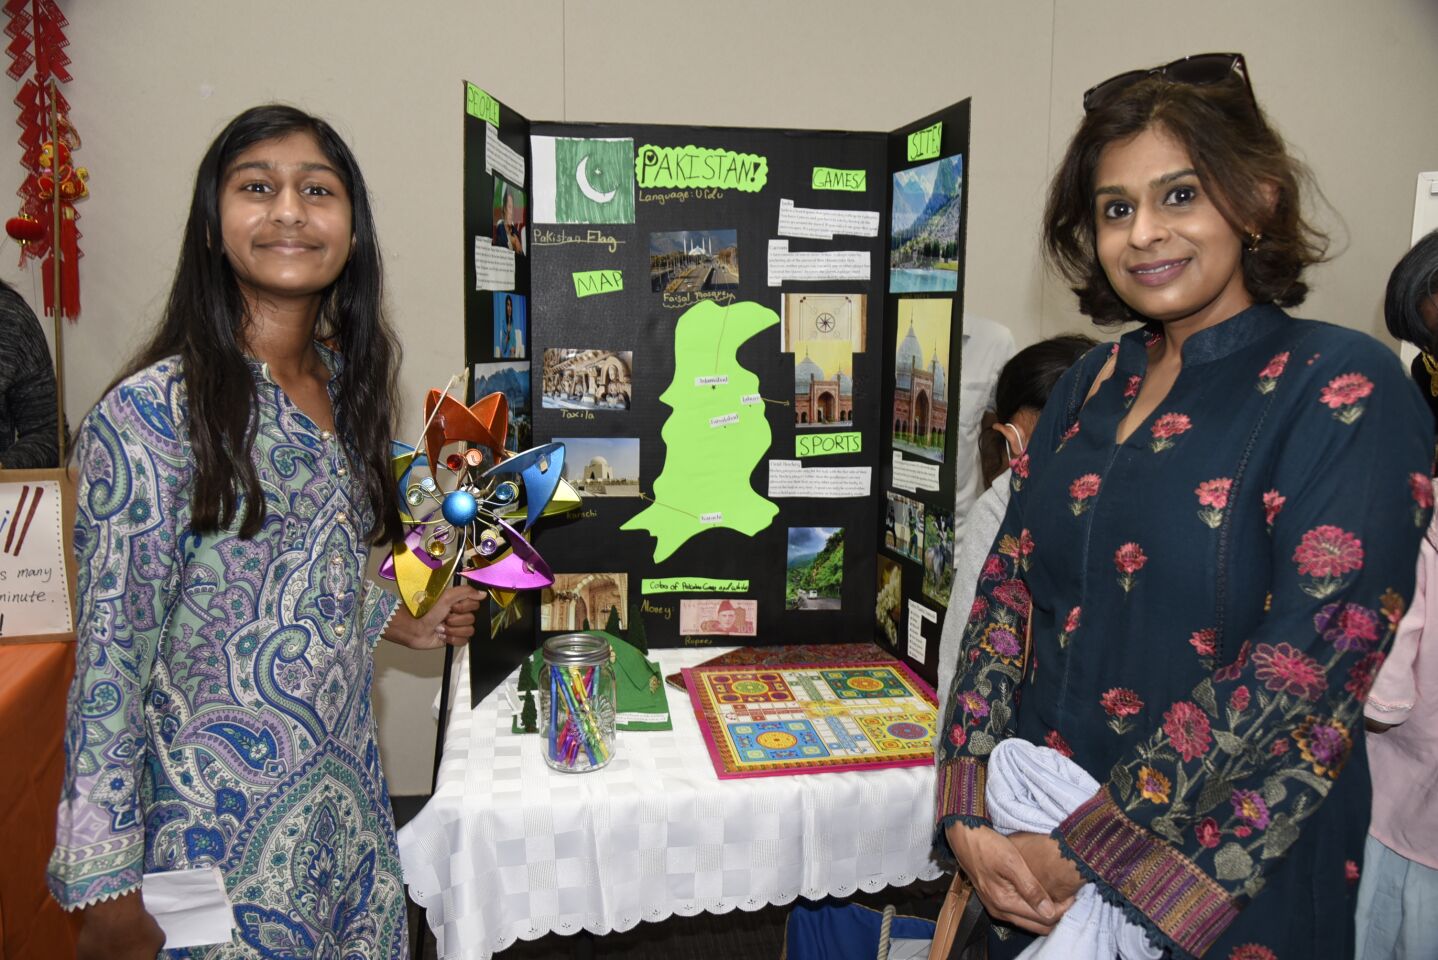 Maaria and Saima Aslam represented Pakistan